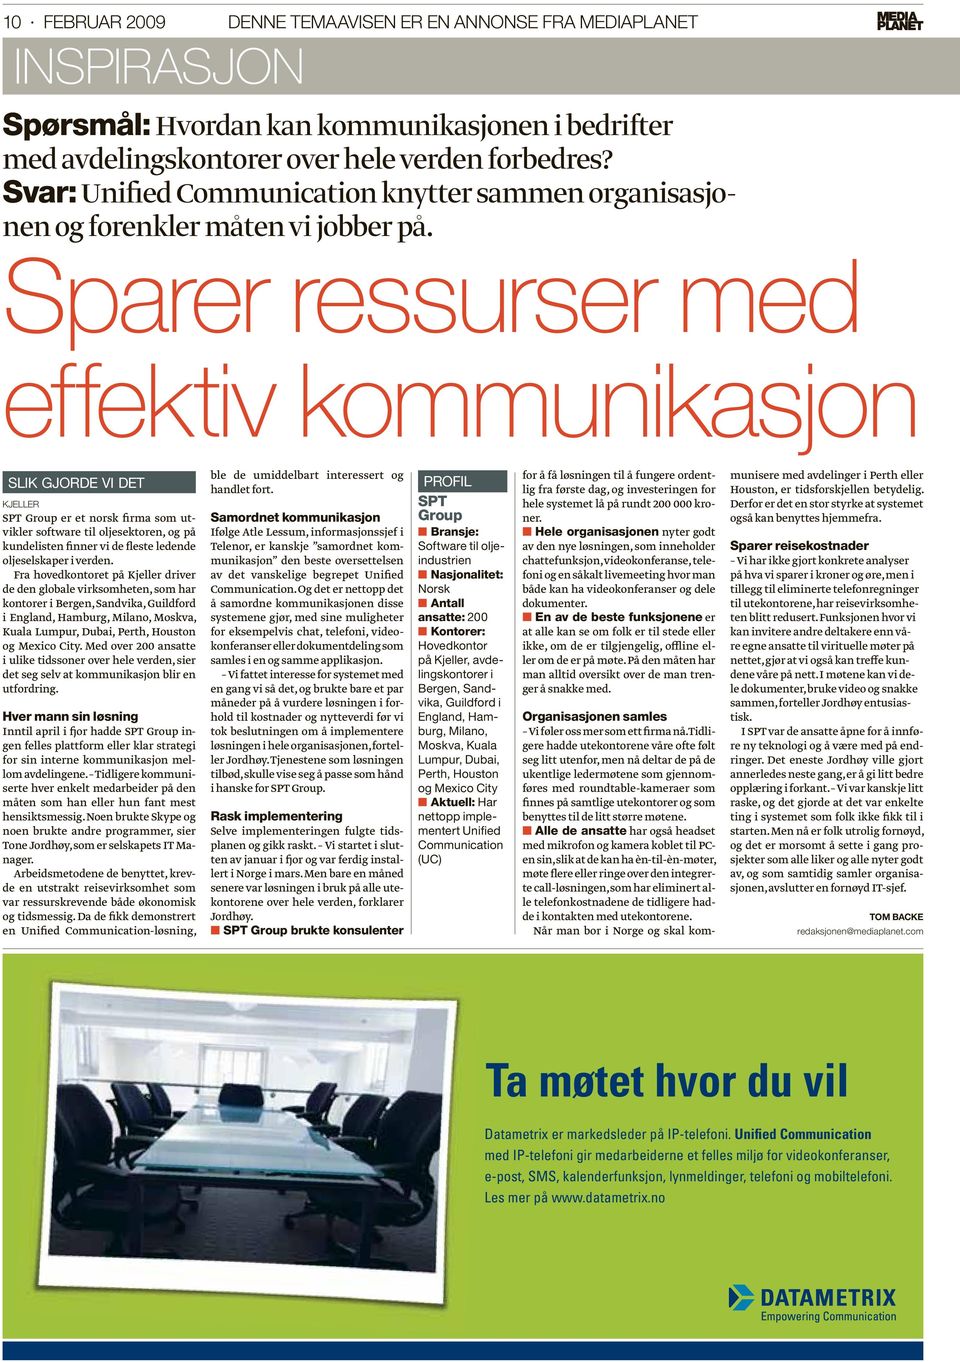 Sparer ressurser med effektiv kommunikasjon SLIK GJORDE VI DET KJELLER SPT Group er et norsk firma som utvikler software til oljesektoren, og på kundelisten finner vi de fleste ledende oljeselskaper